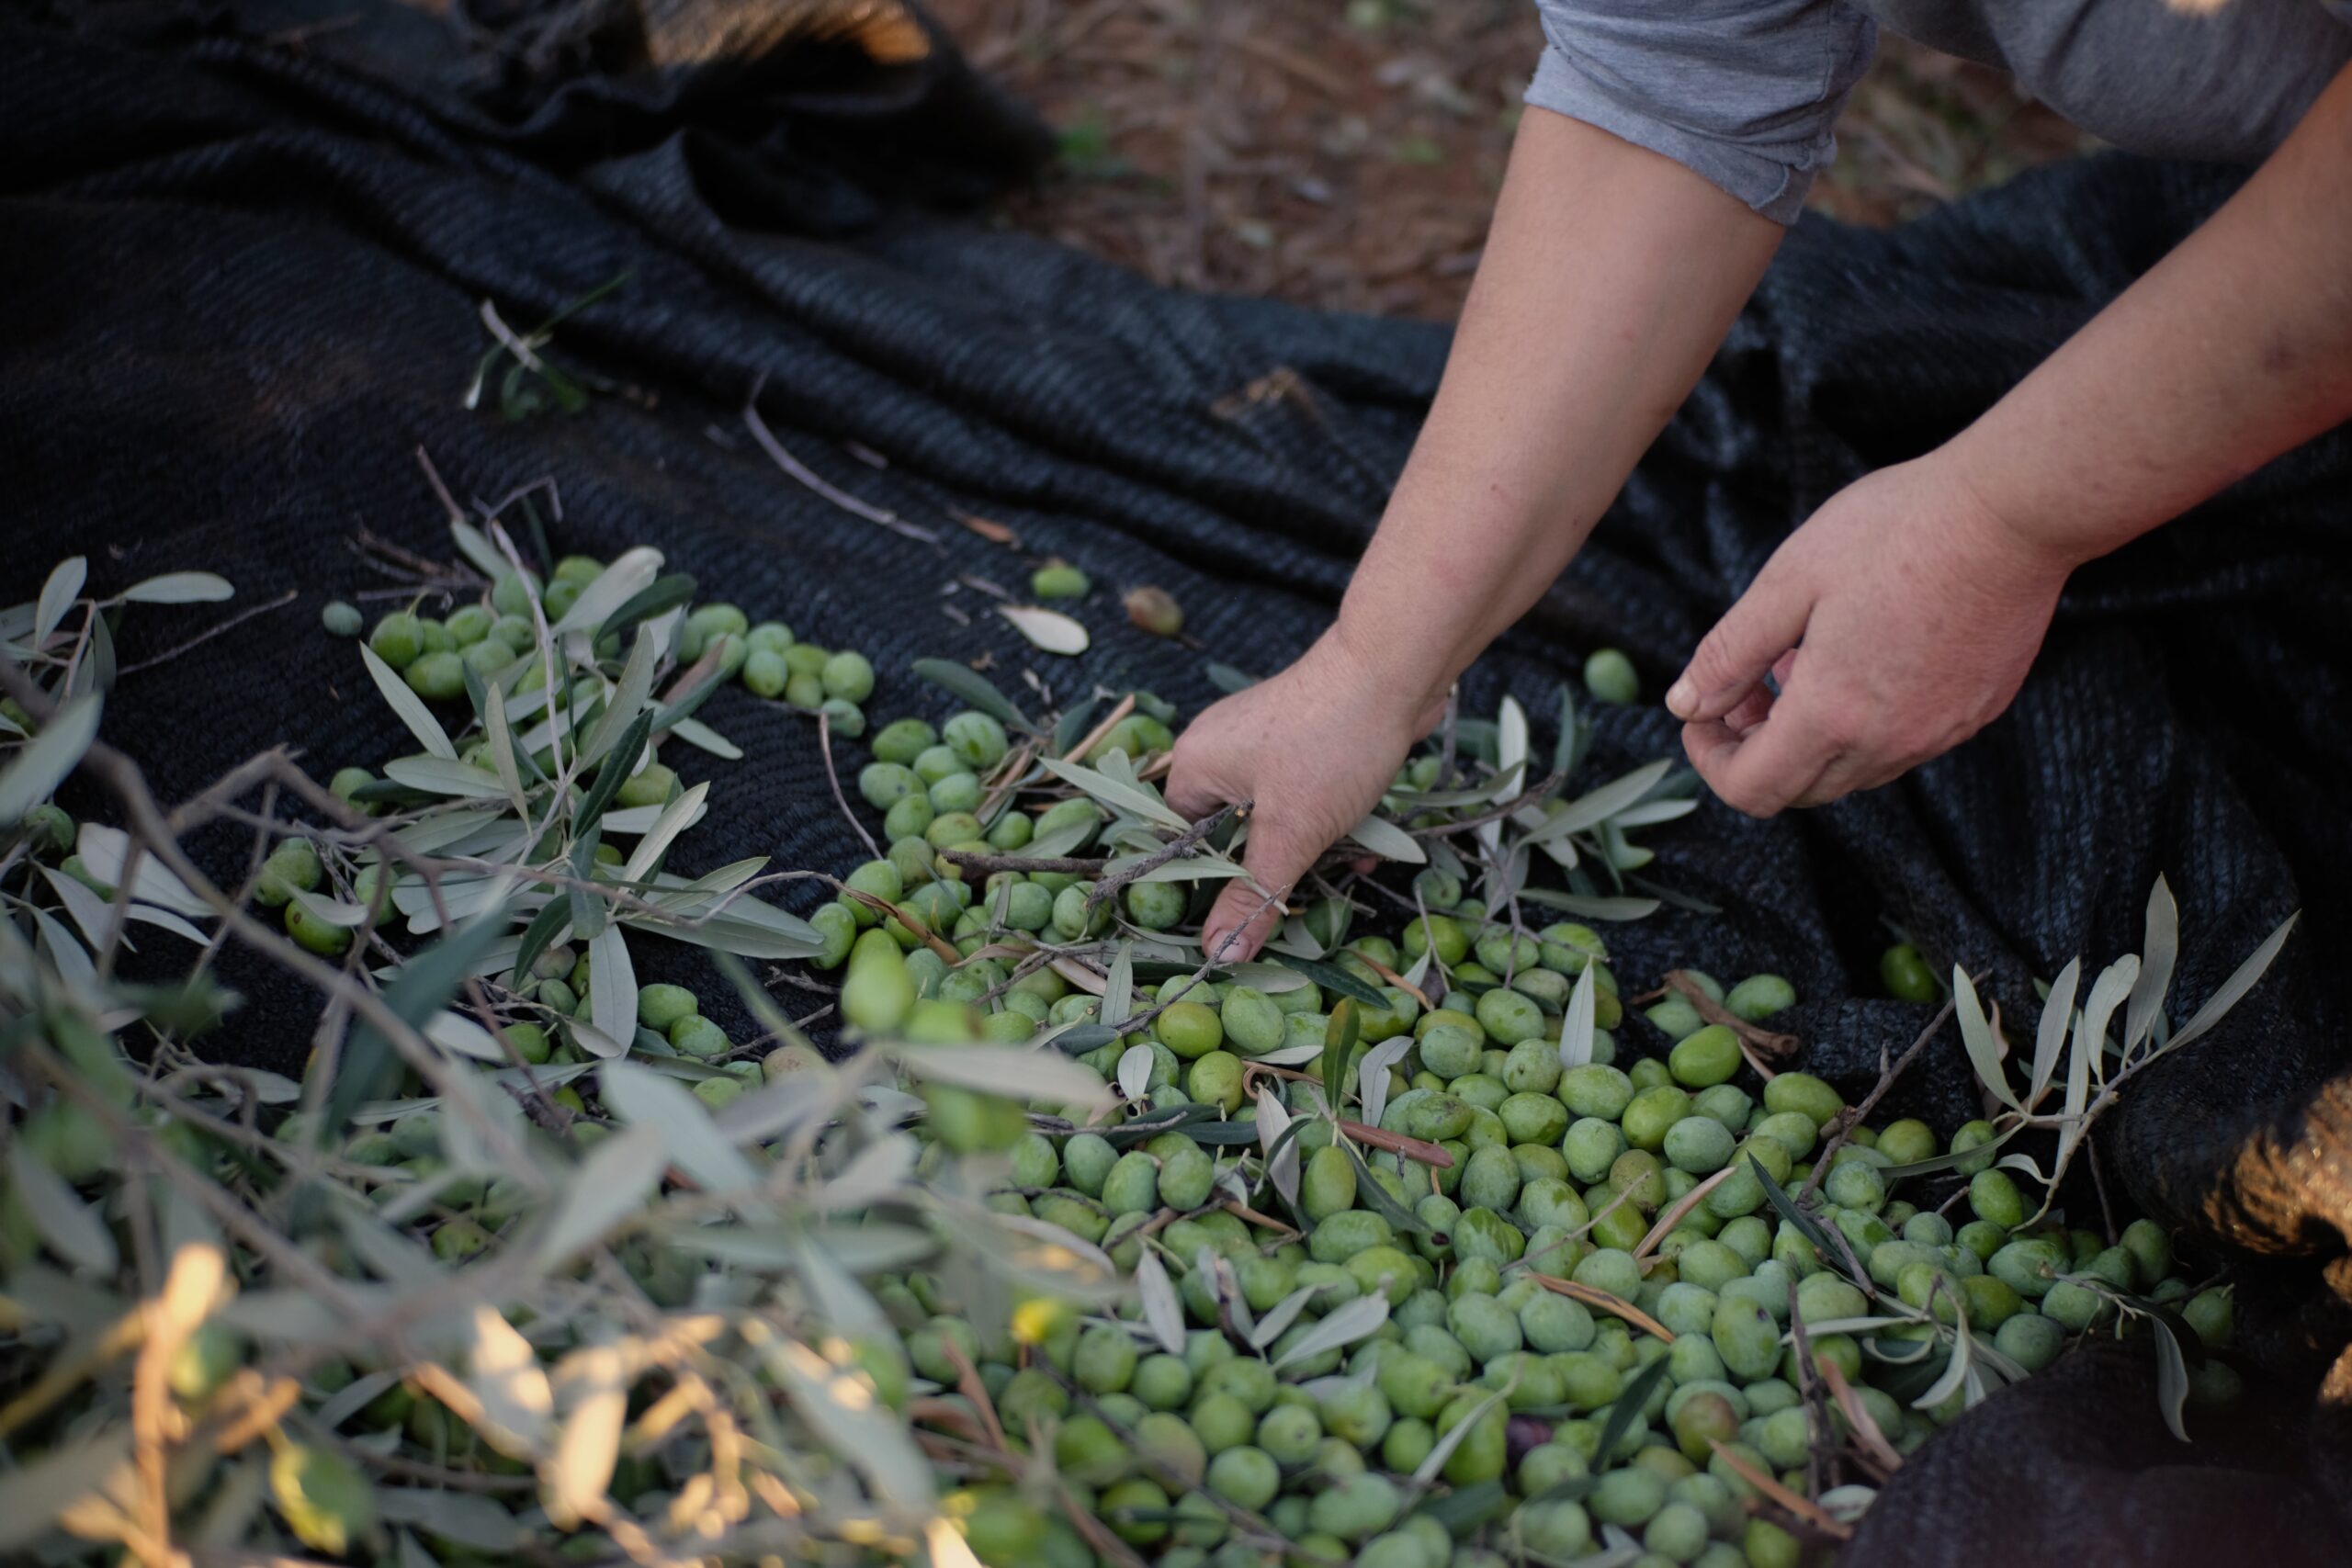 Market Report Olive Oil - Olive picking